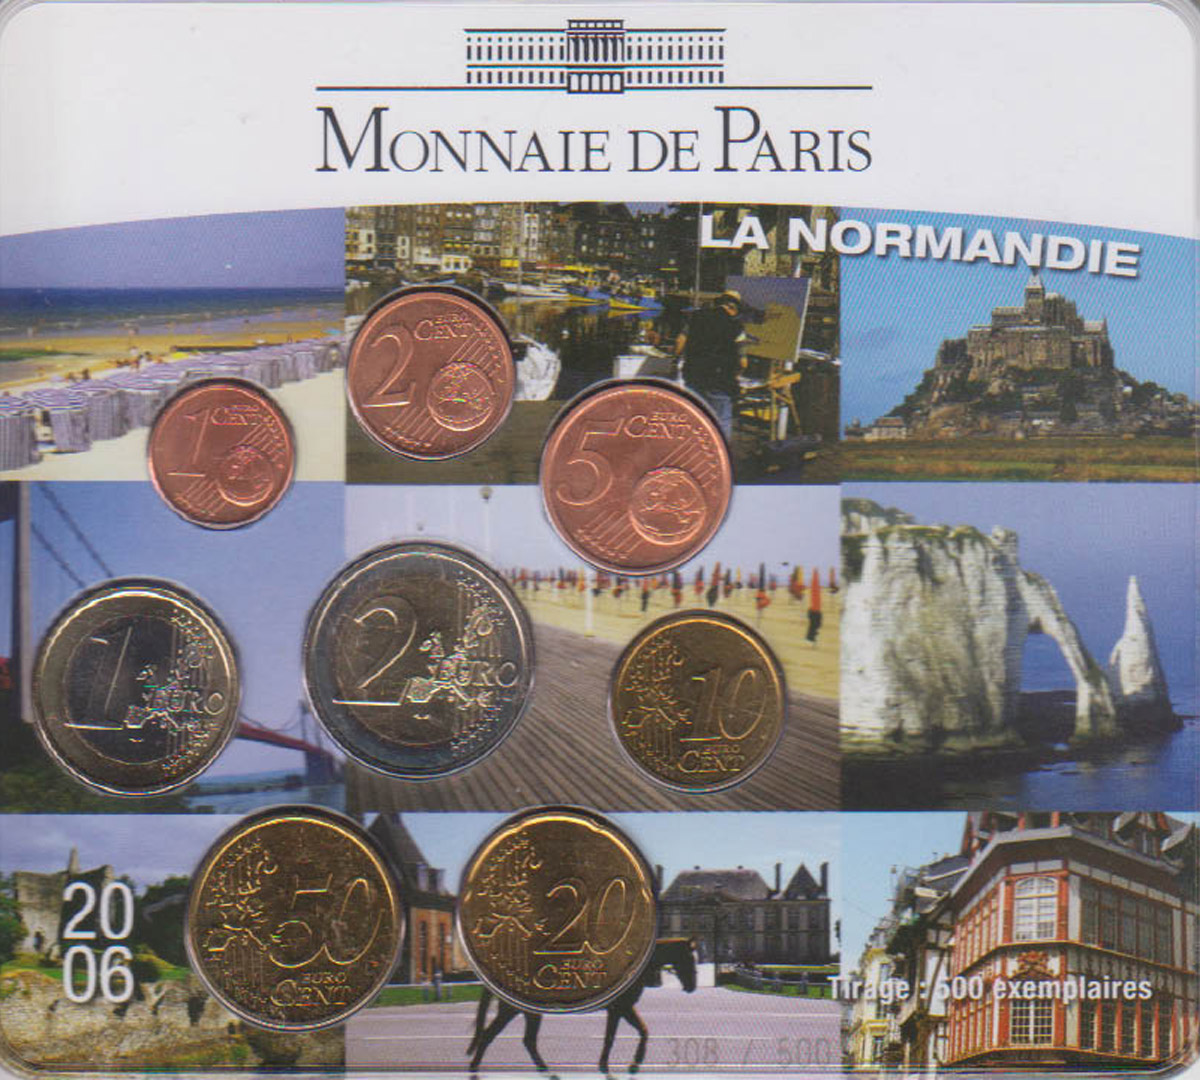  Offiz. Sonder-KMS Frankreich *La Normandie* 2006 nur 500 Stück!   